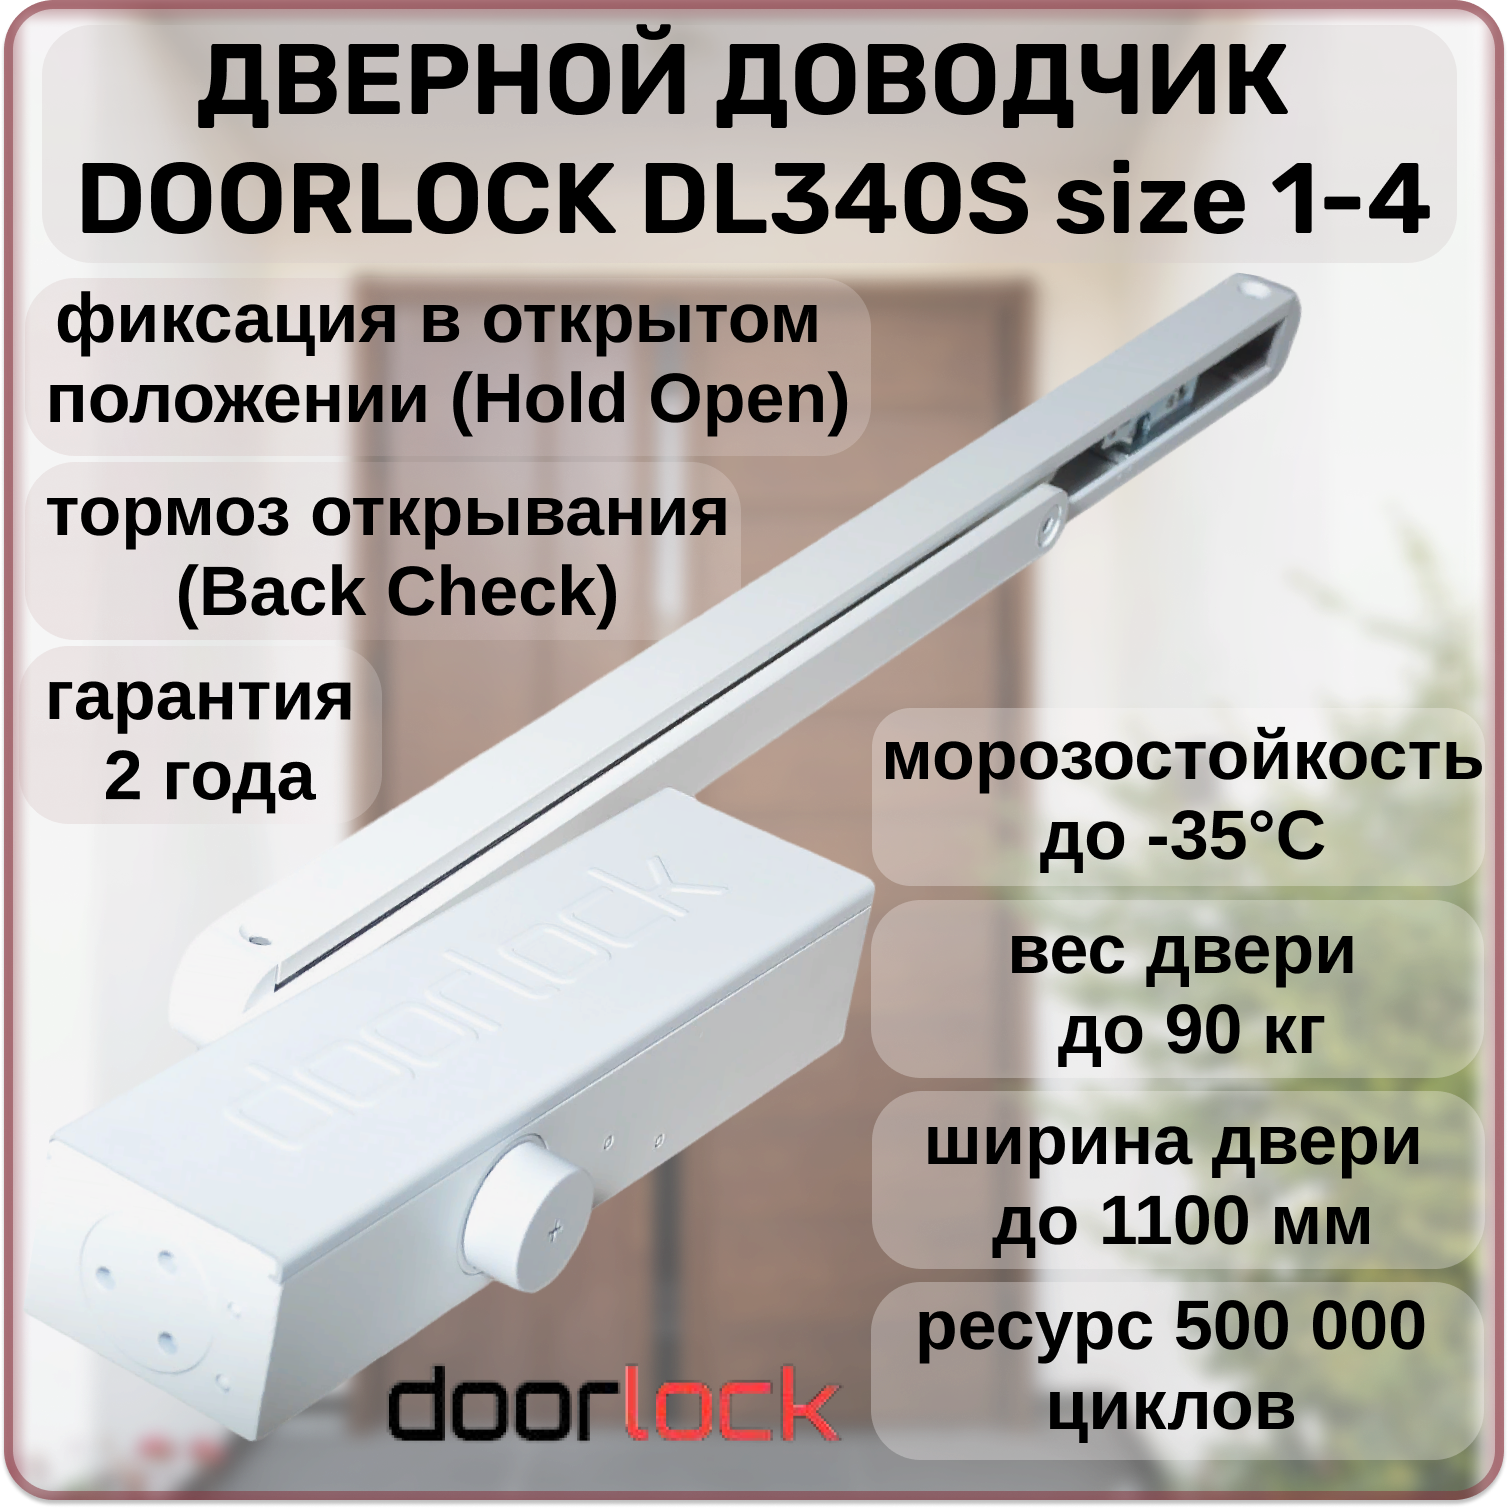 Доводчик дверной DOORLOCK DL340S size 1-4 морозостойкий уличный от 20 до 90кг с фиксацией в открытом положении тормозом открывания